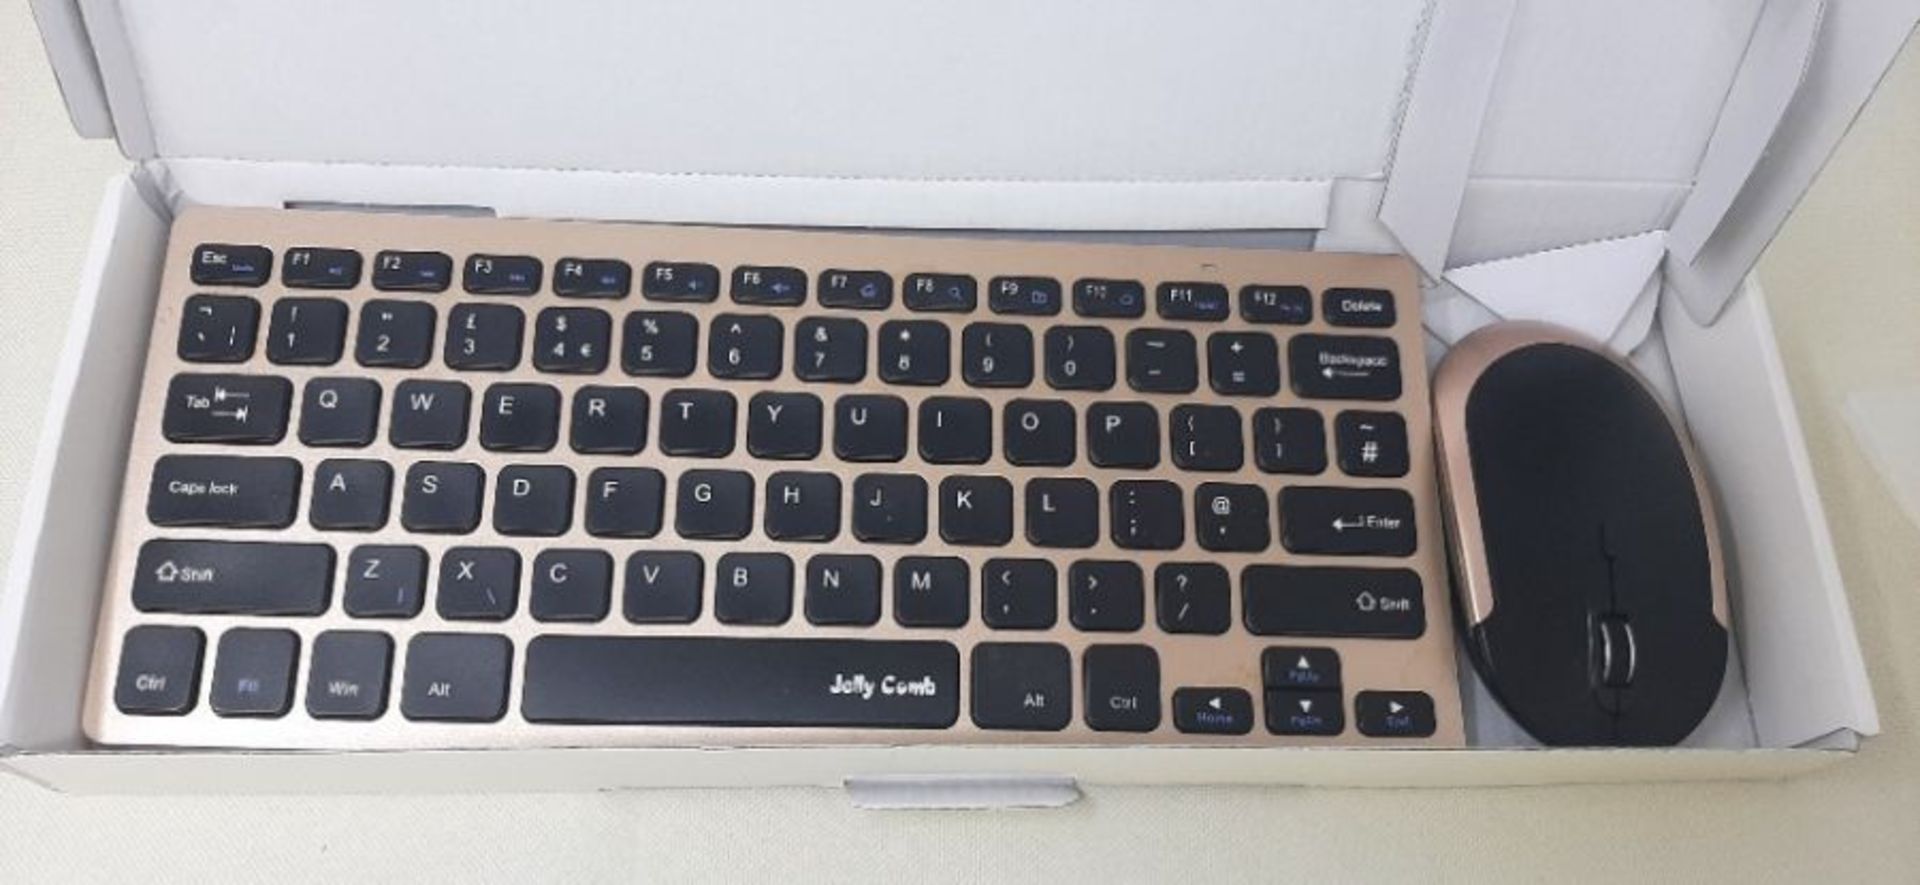 Keyboard and Mouse Set Ultra Slim, Jelly Comb KUT019 2.4G Compact Wireless Keyboard Mo - Bild 2 aus 2